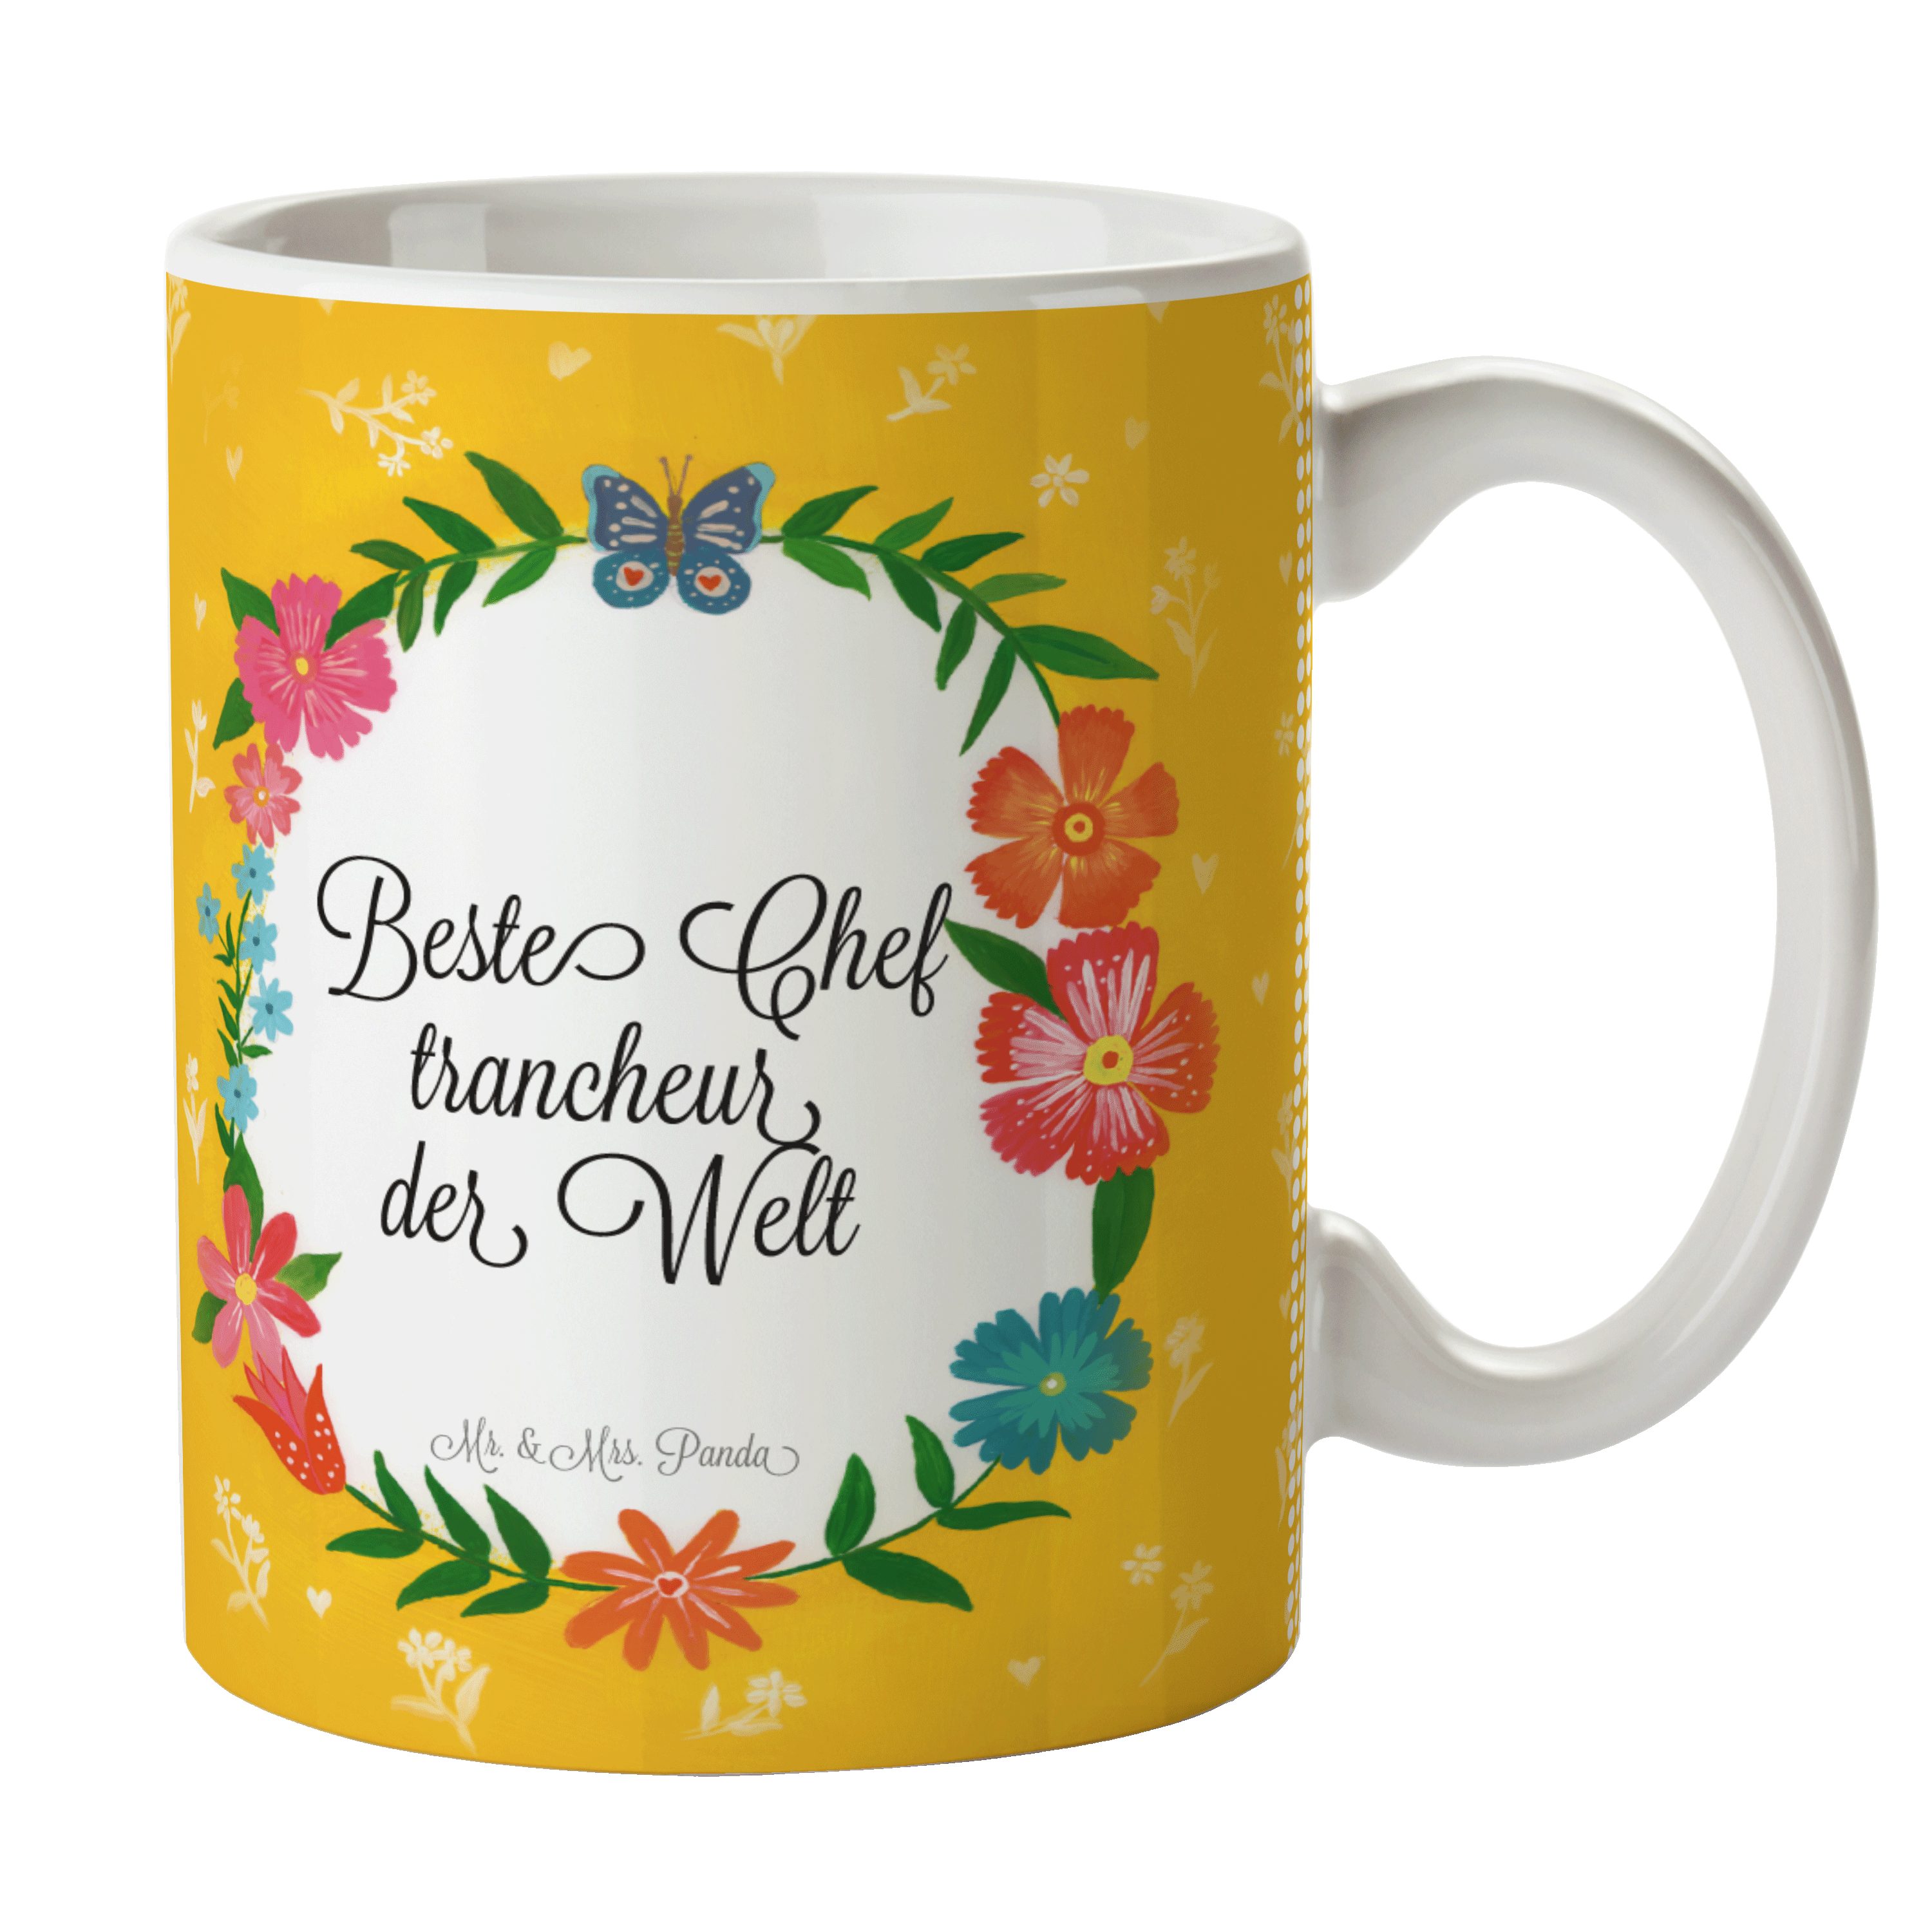 Mr. & Mrs. Chef trancheur Schenken, Kaffeebecher, Tasse Motiv, Keramik Tasse Tasse, - Panda Geschenk